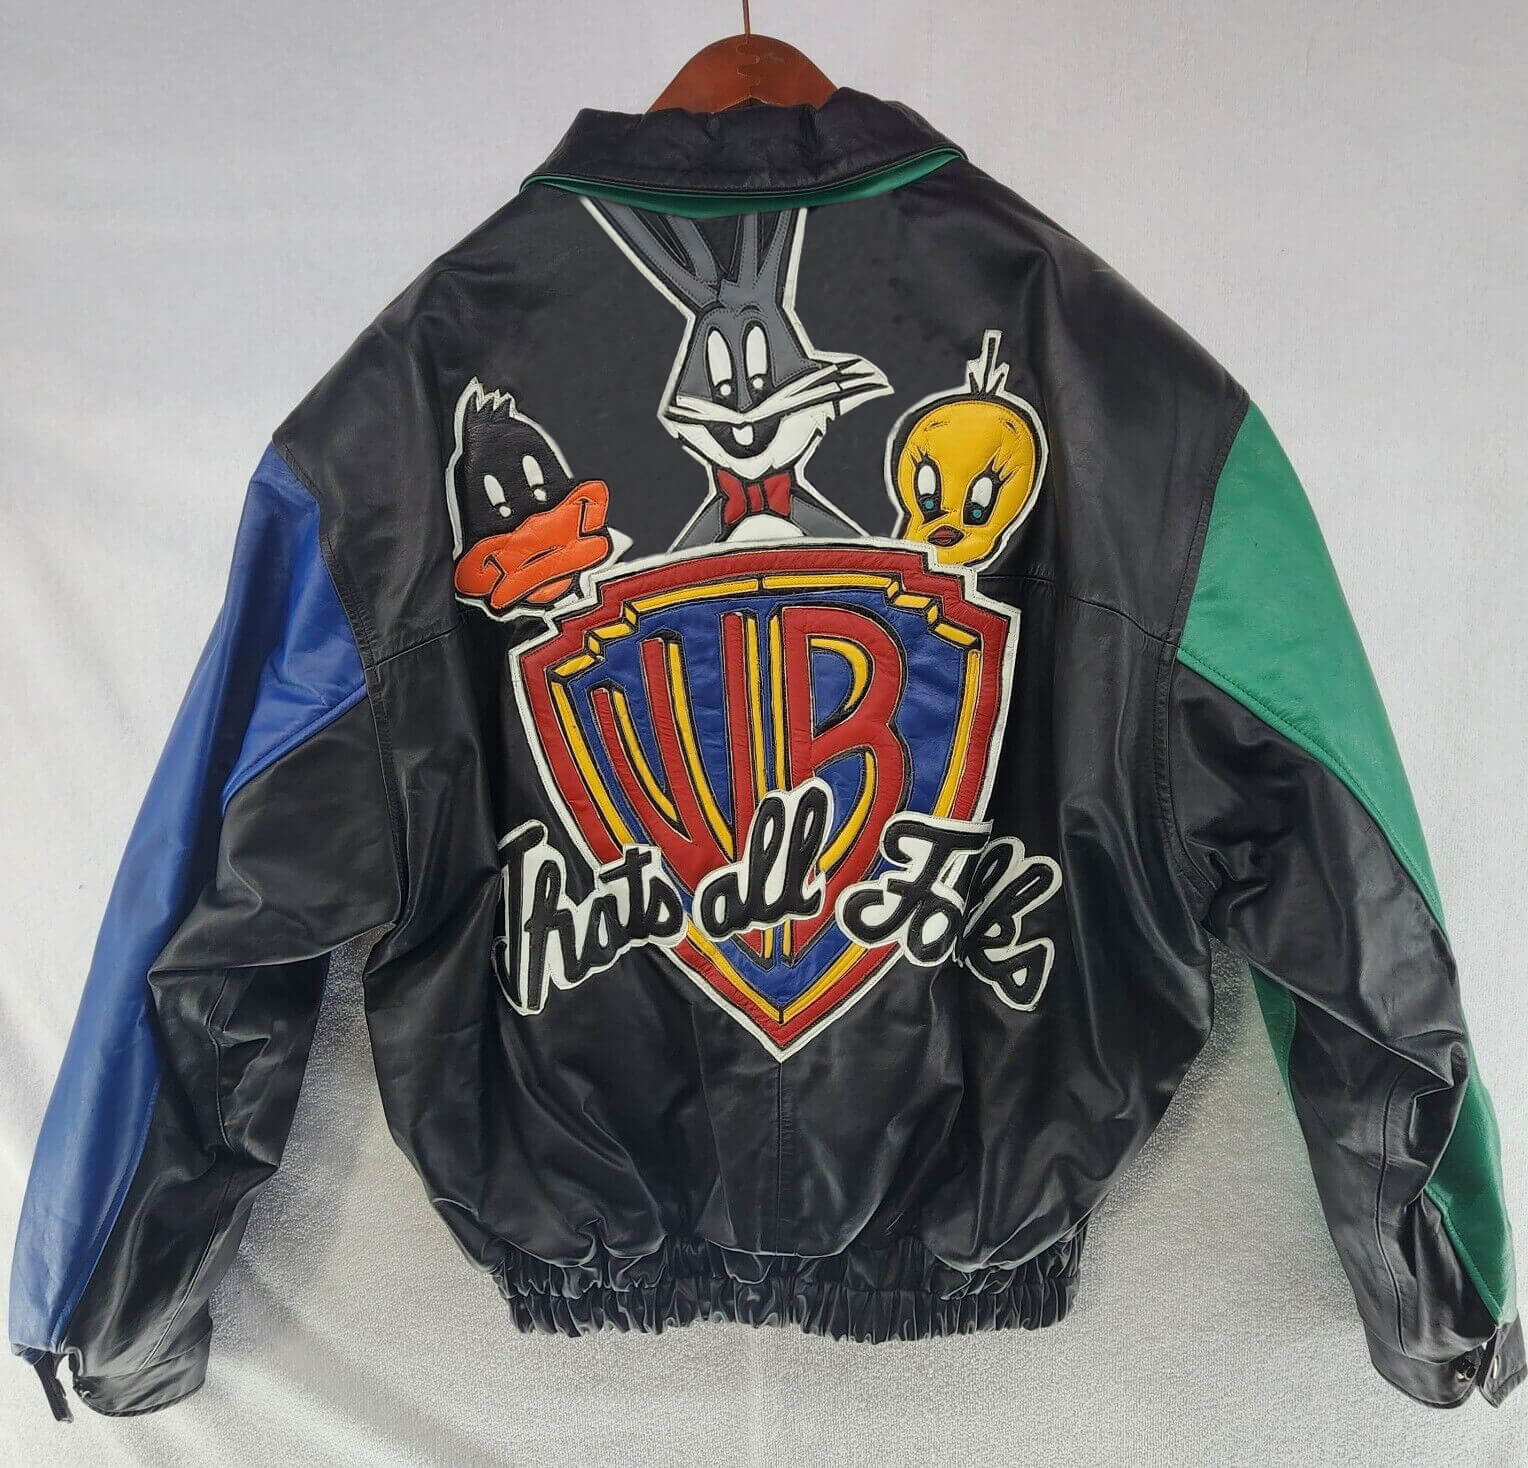 Warner brothers vintage leather jacket野村訓一